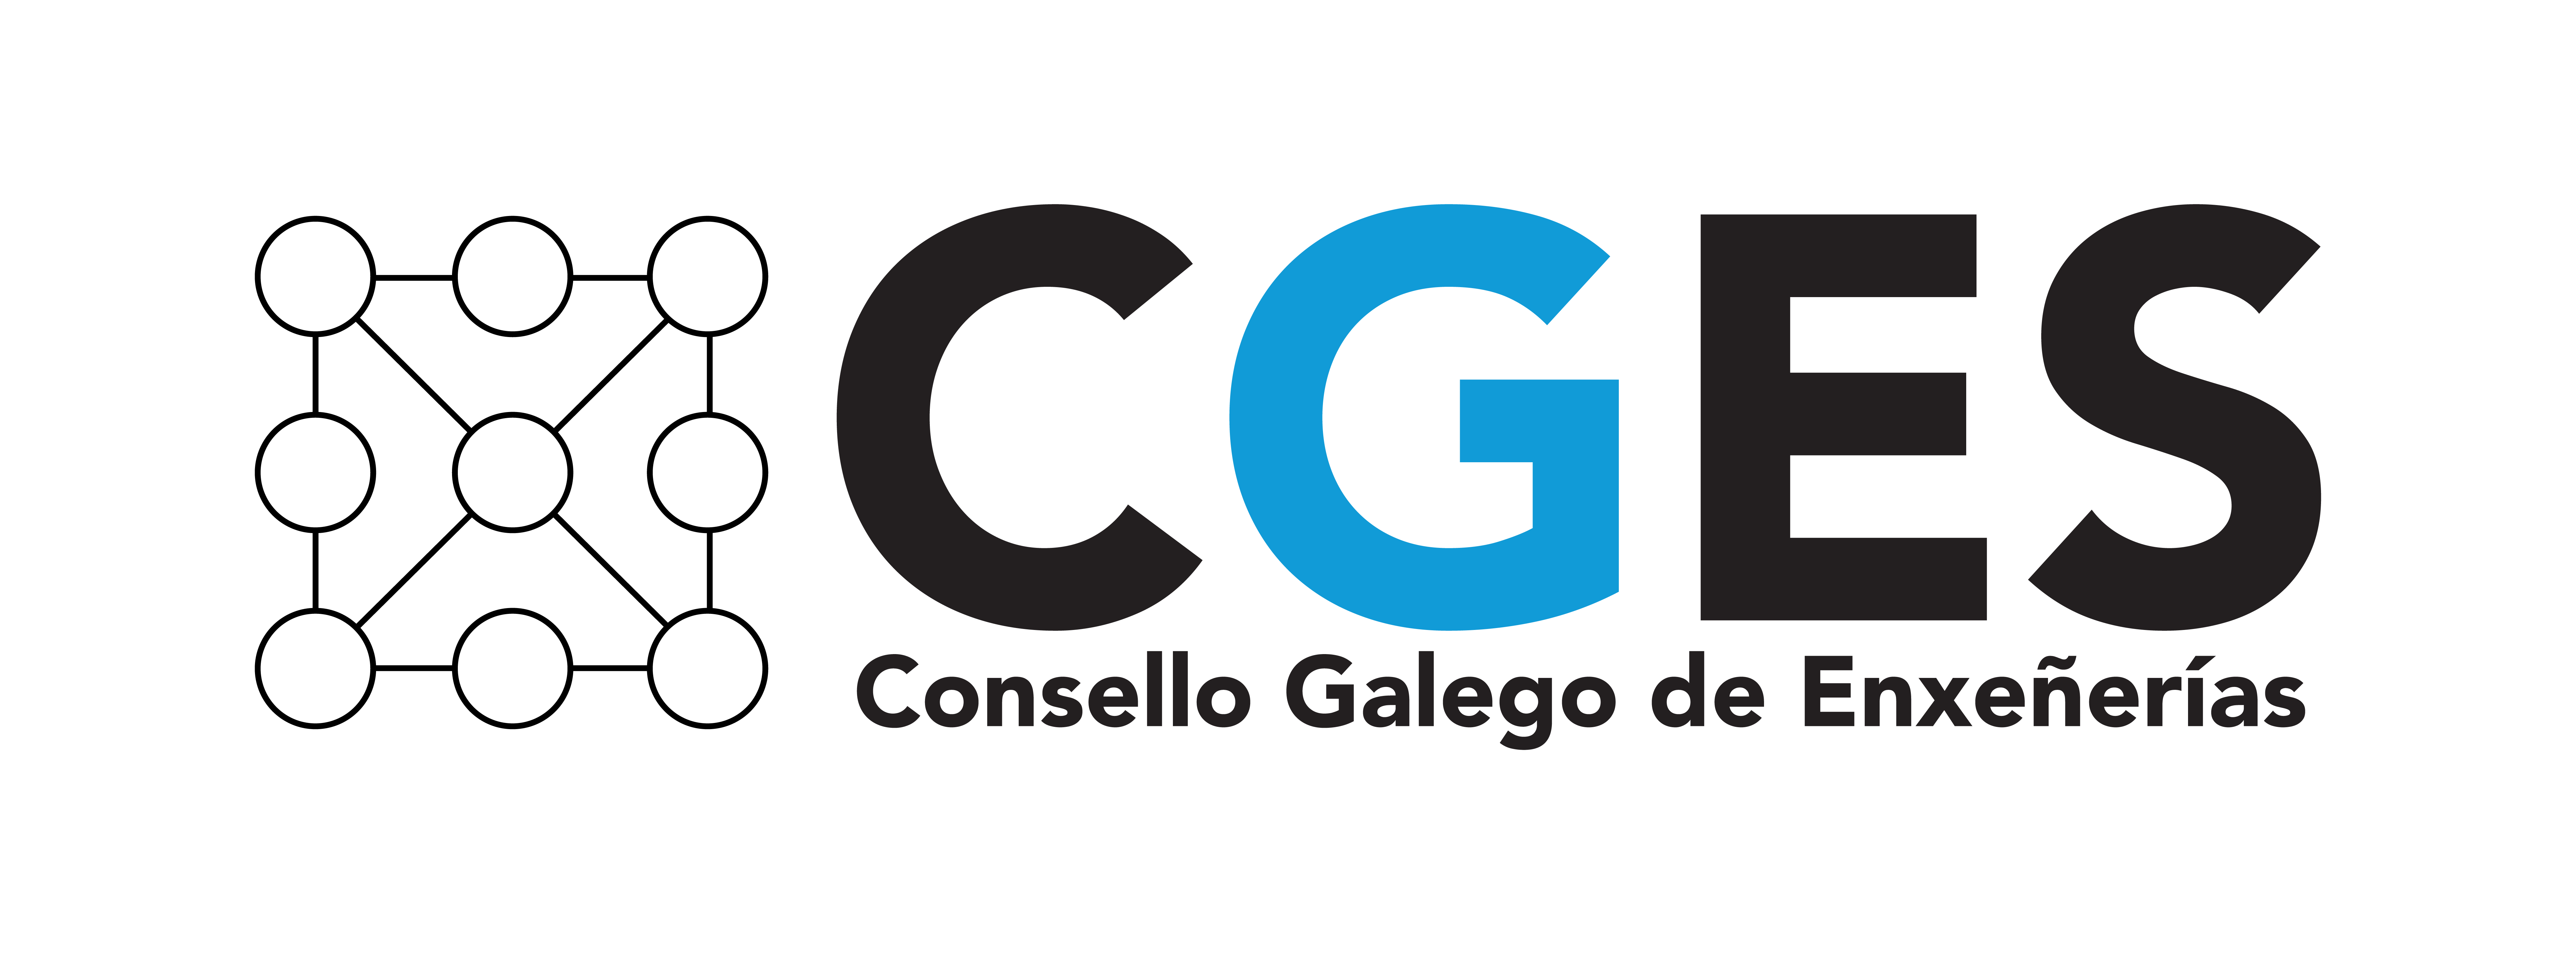 Consello Galego de Enxeñerías